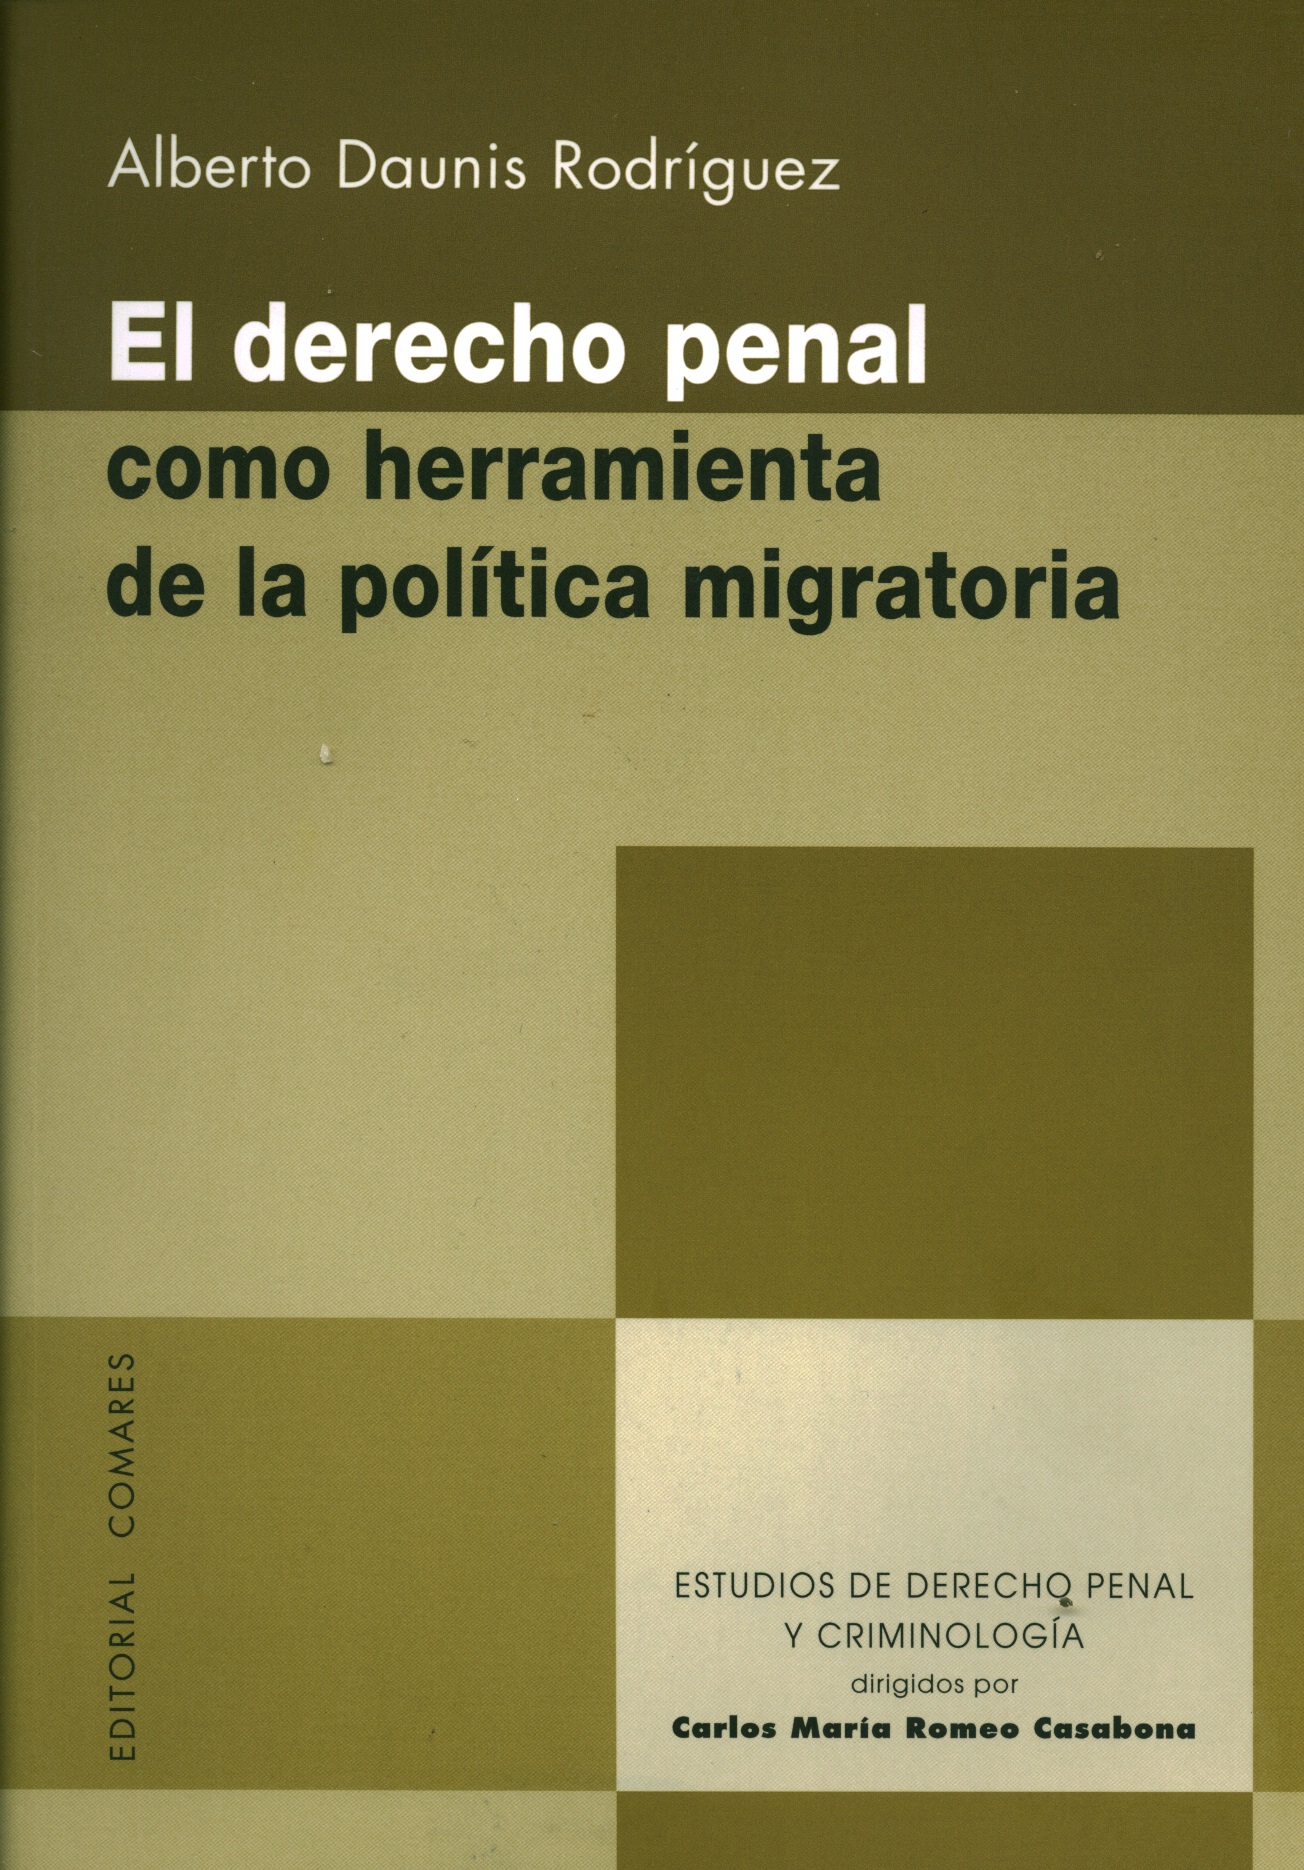 El derecho penal como herramienta de la política migratoria